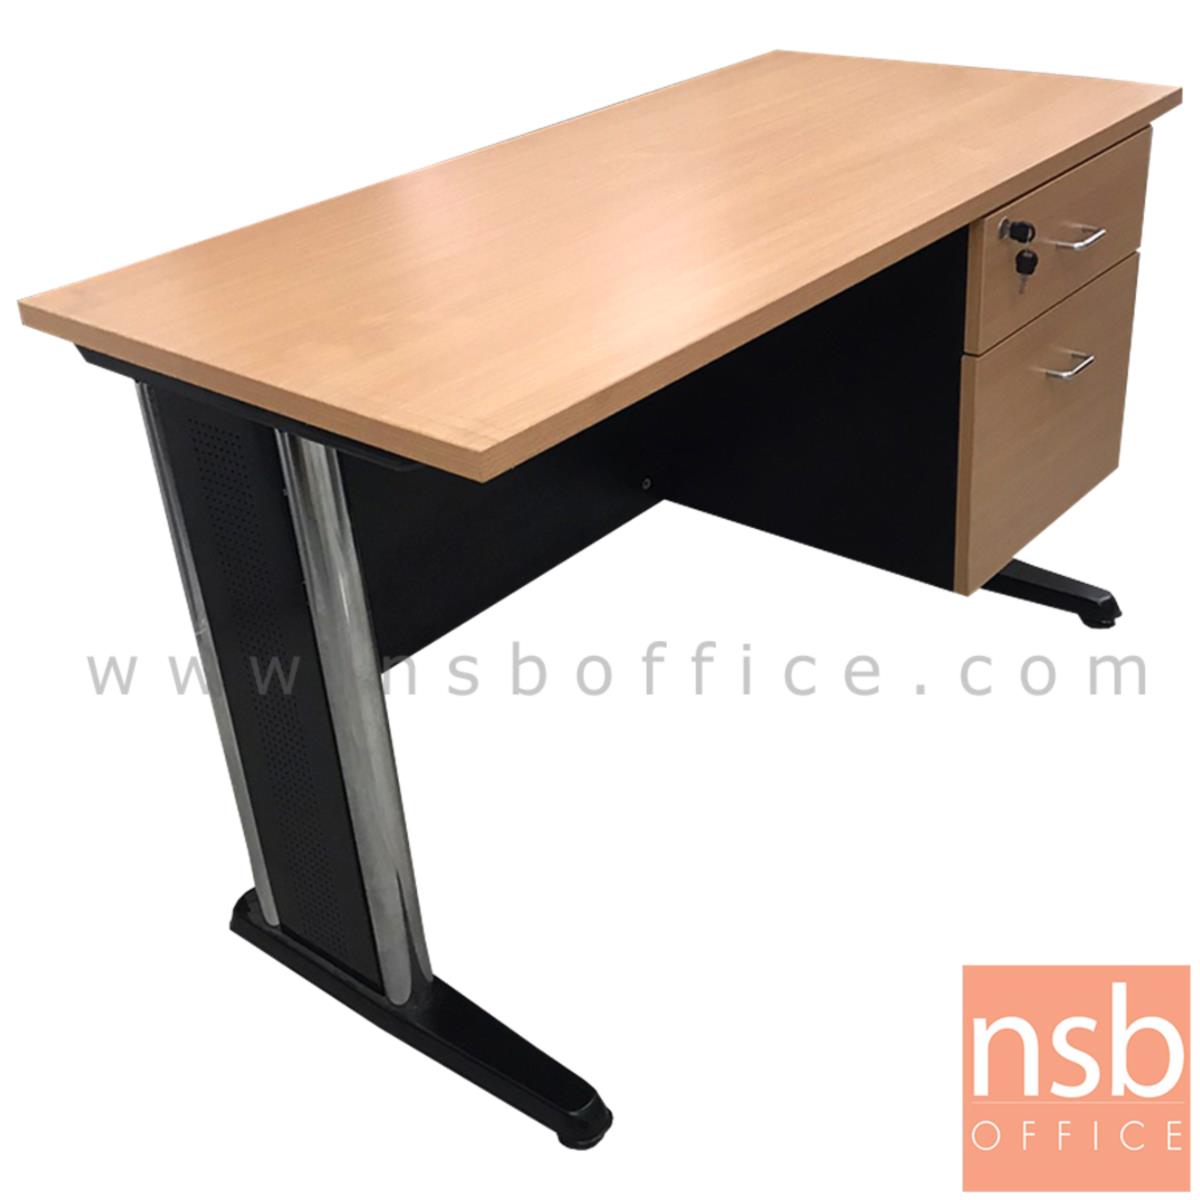 L10A205:โต๊ะทำงาน 2 ลิ้นชัก  ขนาด 120W*75H cm. ขาเหล็ก สีบีช-ดำ